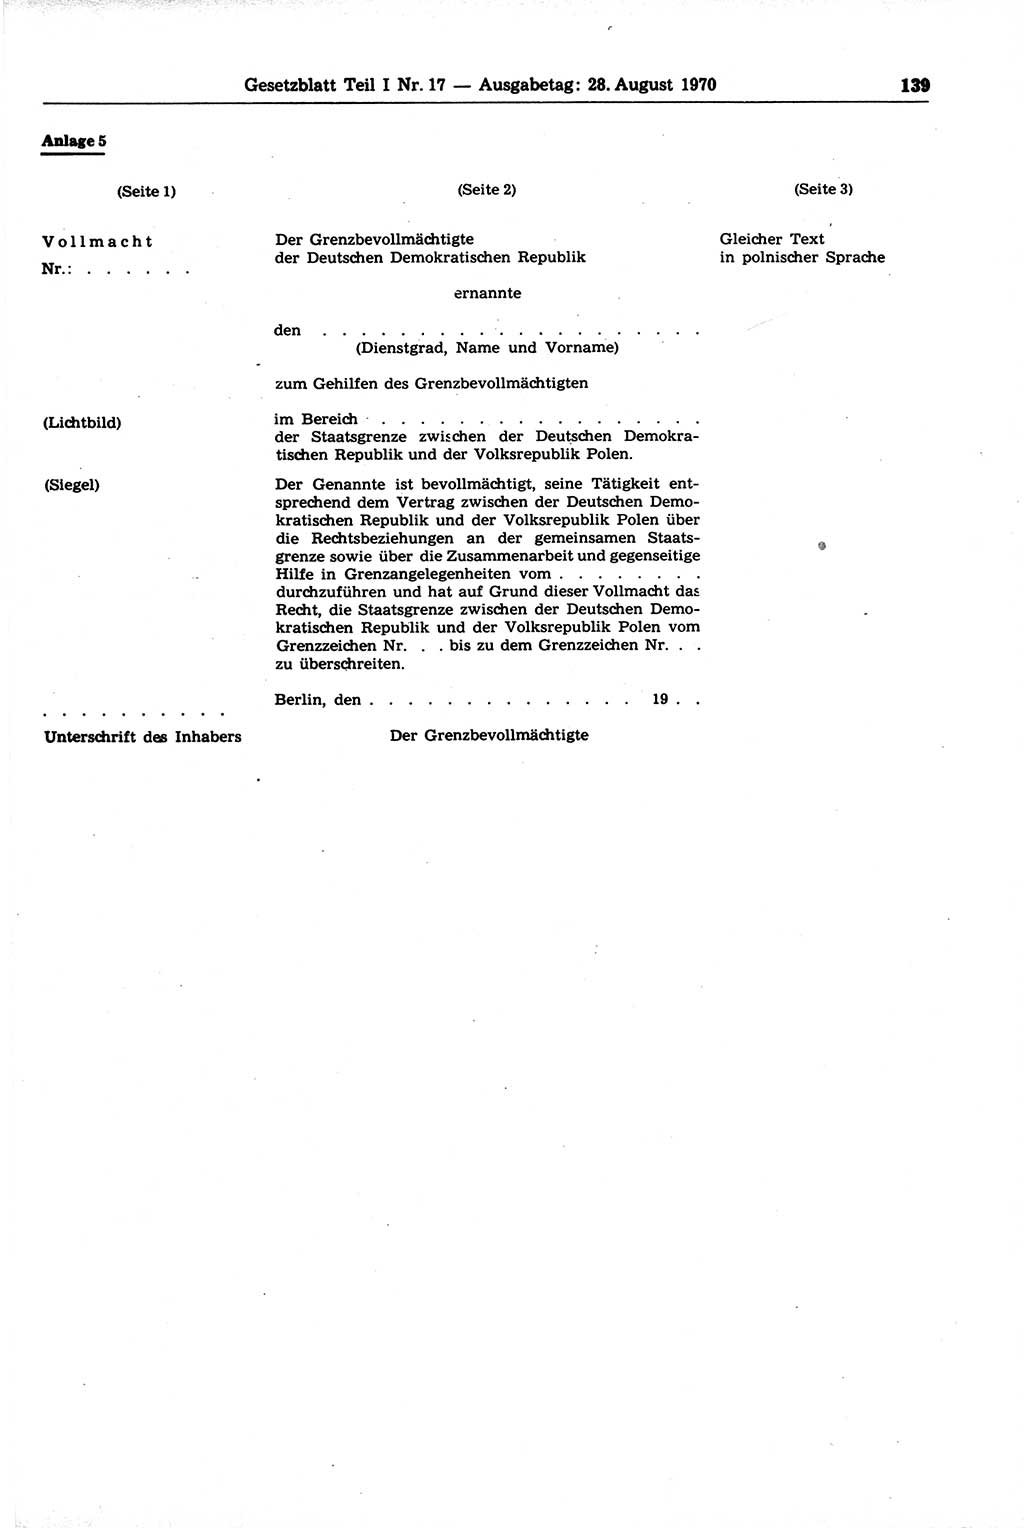 Gesetzblatt (GBl.) der Deutschen Demokratischen Republik (DDR) Teil Ⅰ 1970, Seite 139 (GBl. DDR Ⅰ 1970, S. 139)